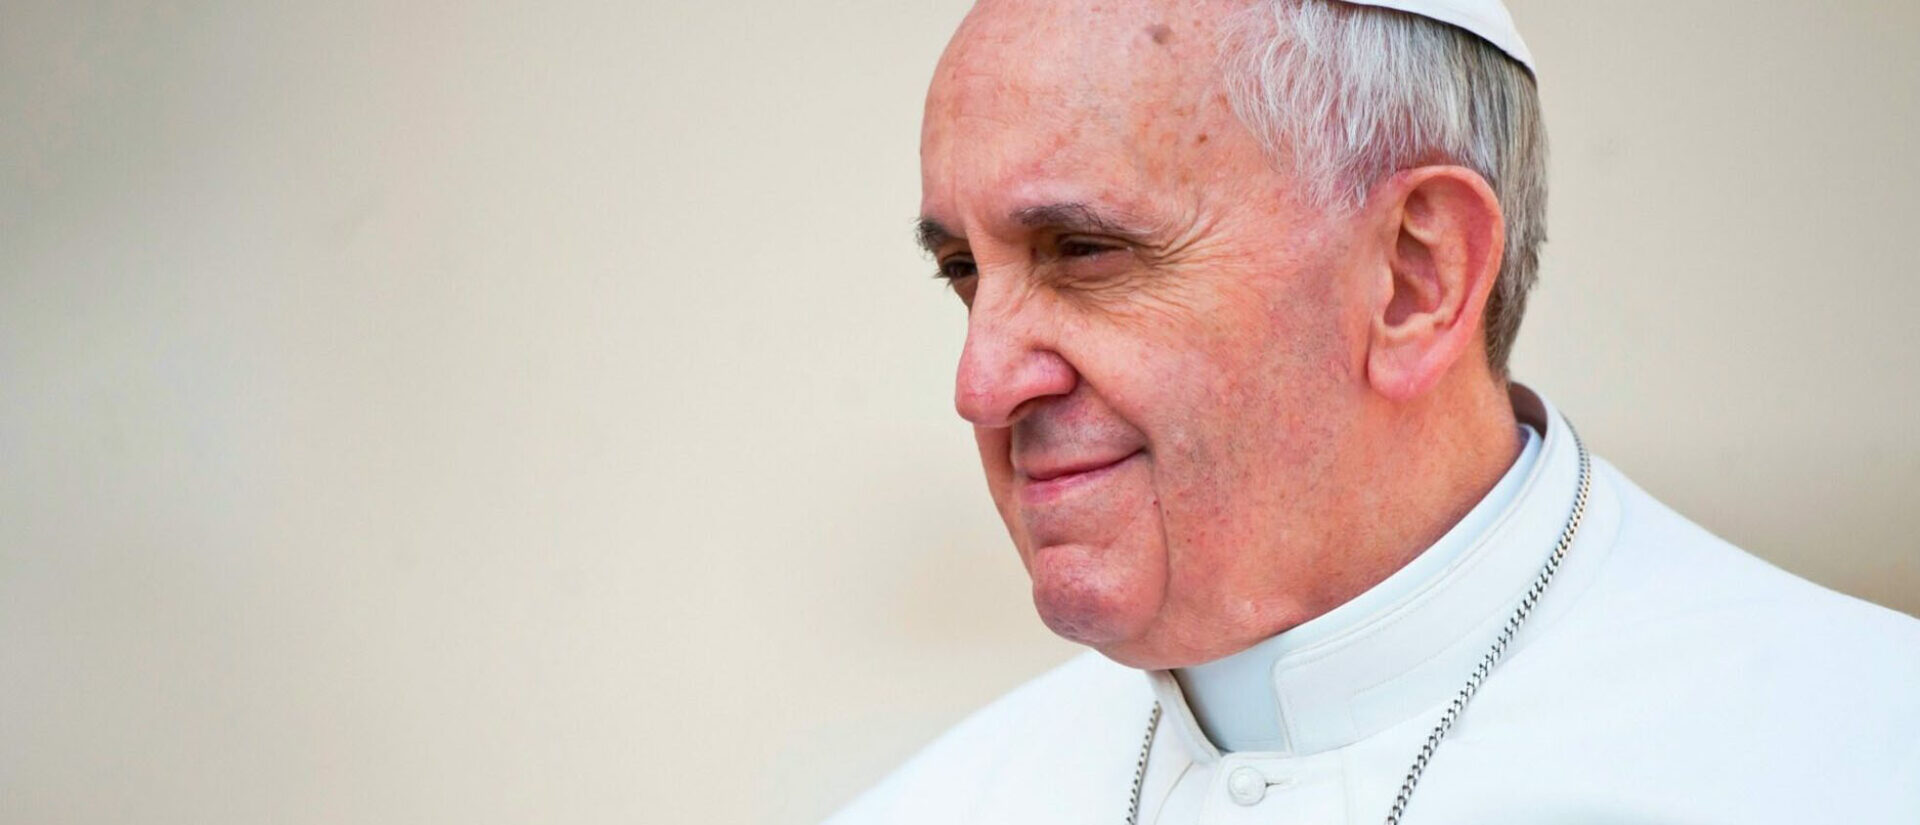 Le pape, qui affirme qu’il ne retournera pas en Argentine, reconnaît penser à la mort | © Church of England/Flickr/CC BY-NC-ND 2.0